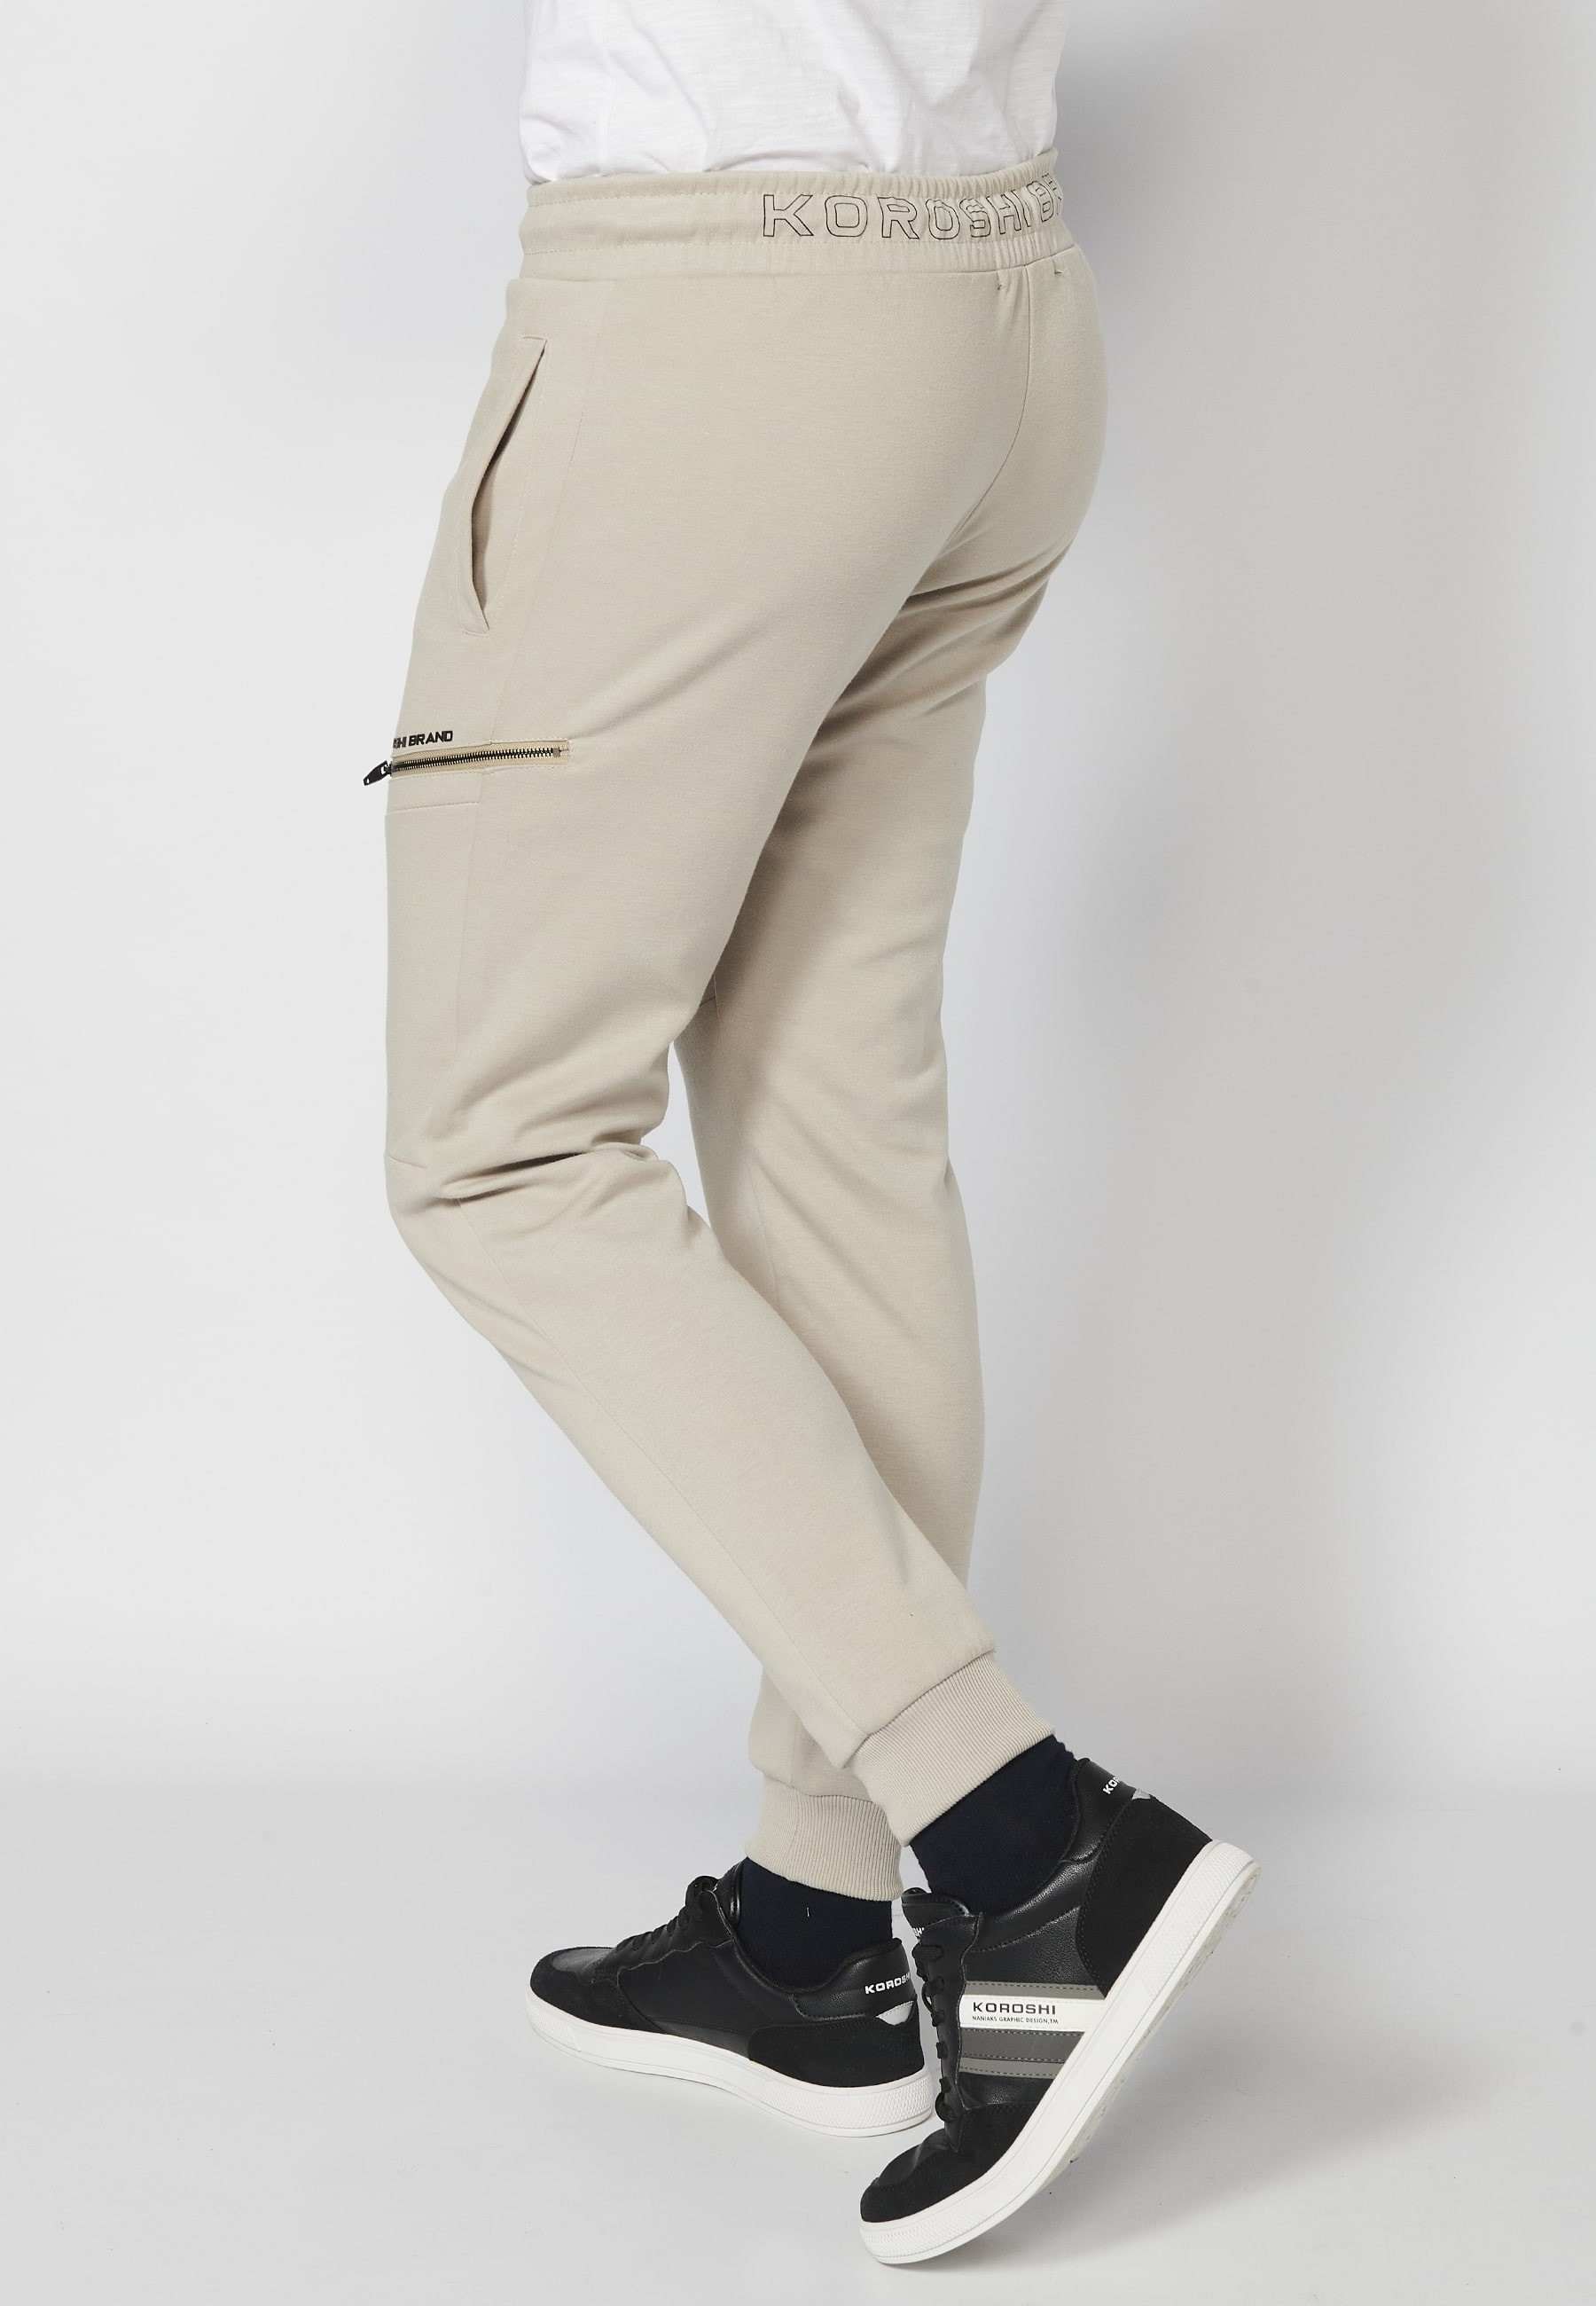 Pantalon de jogging long avec taille caoutchoutée et cordon de serrage avec découpes aux genoux, couleur Stone, pour Homme 7